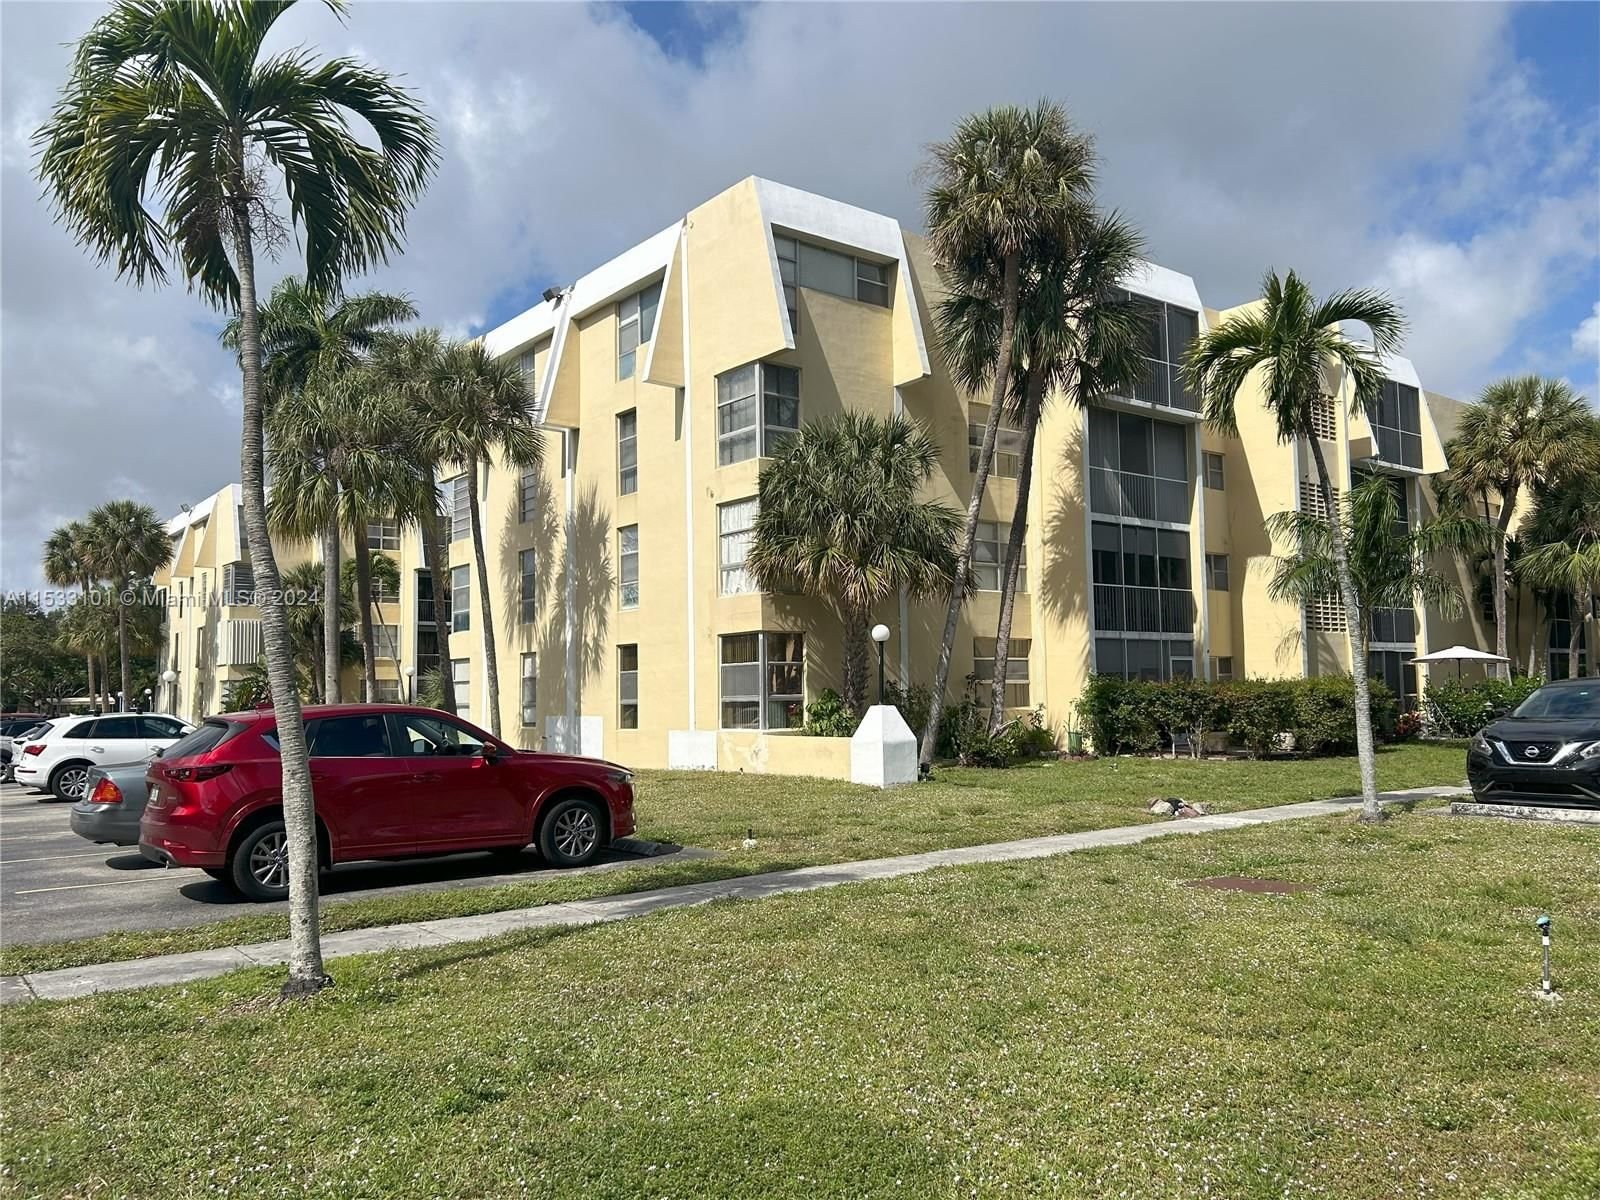 Real estate property located at 940 199th St #4L, Miami-Dade County, LAKE PARK CONDO NO 1 - BL, Miami, FL